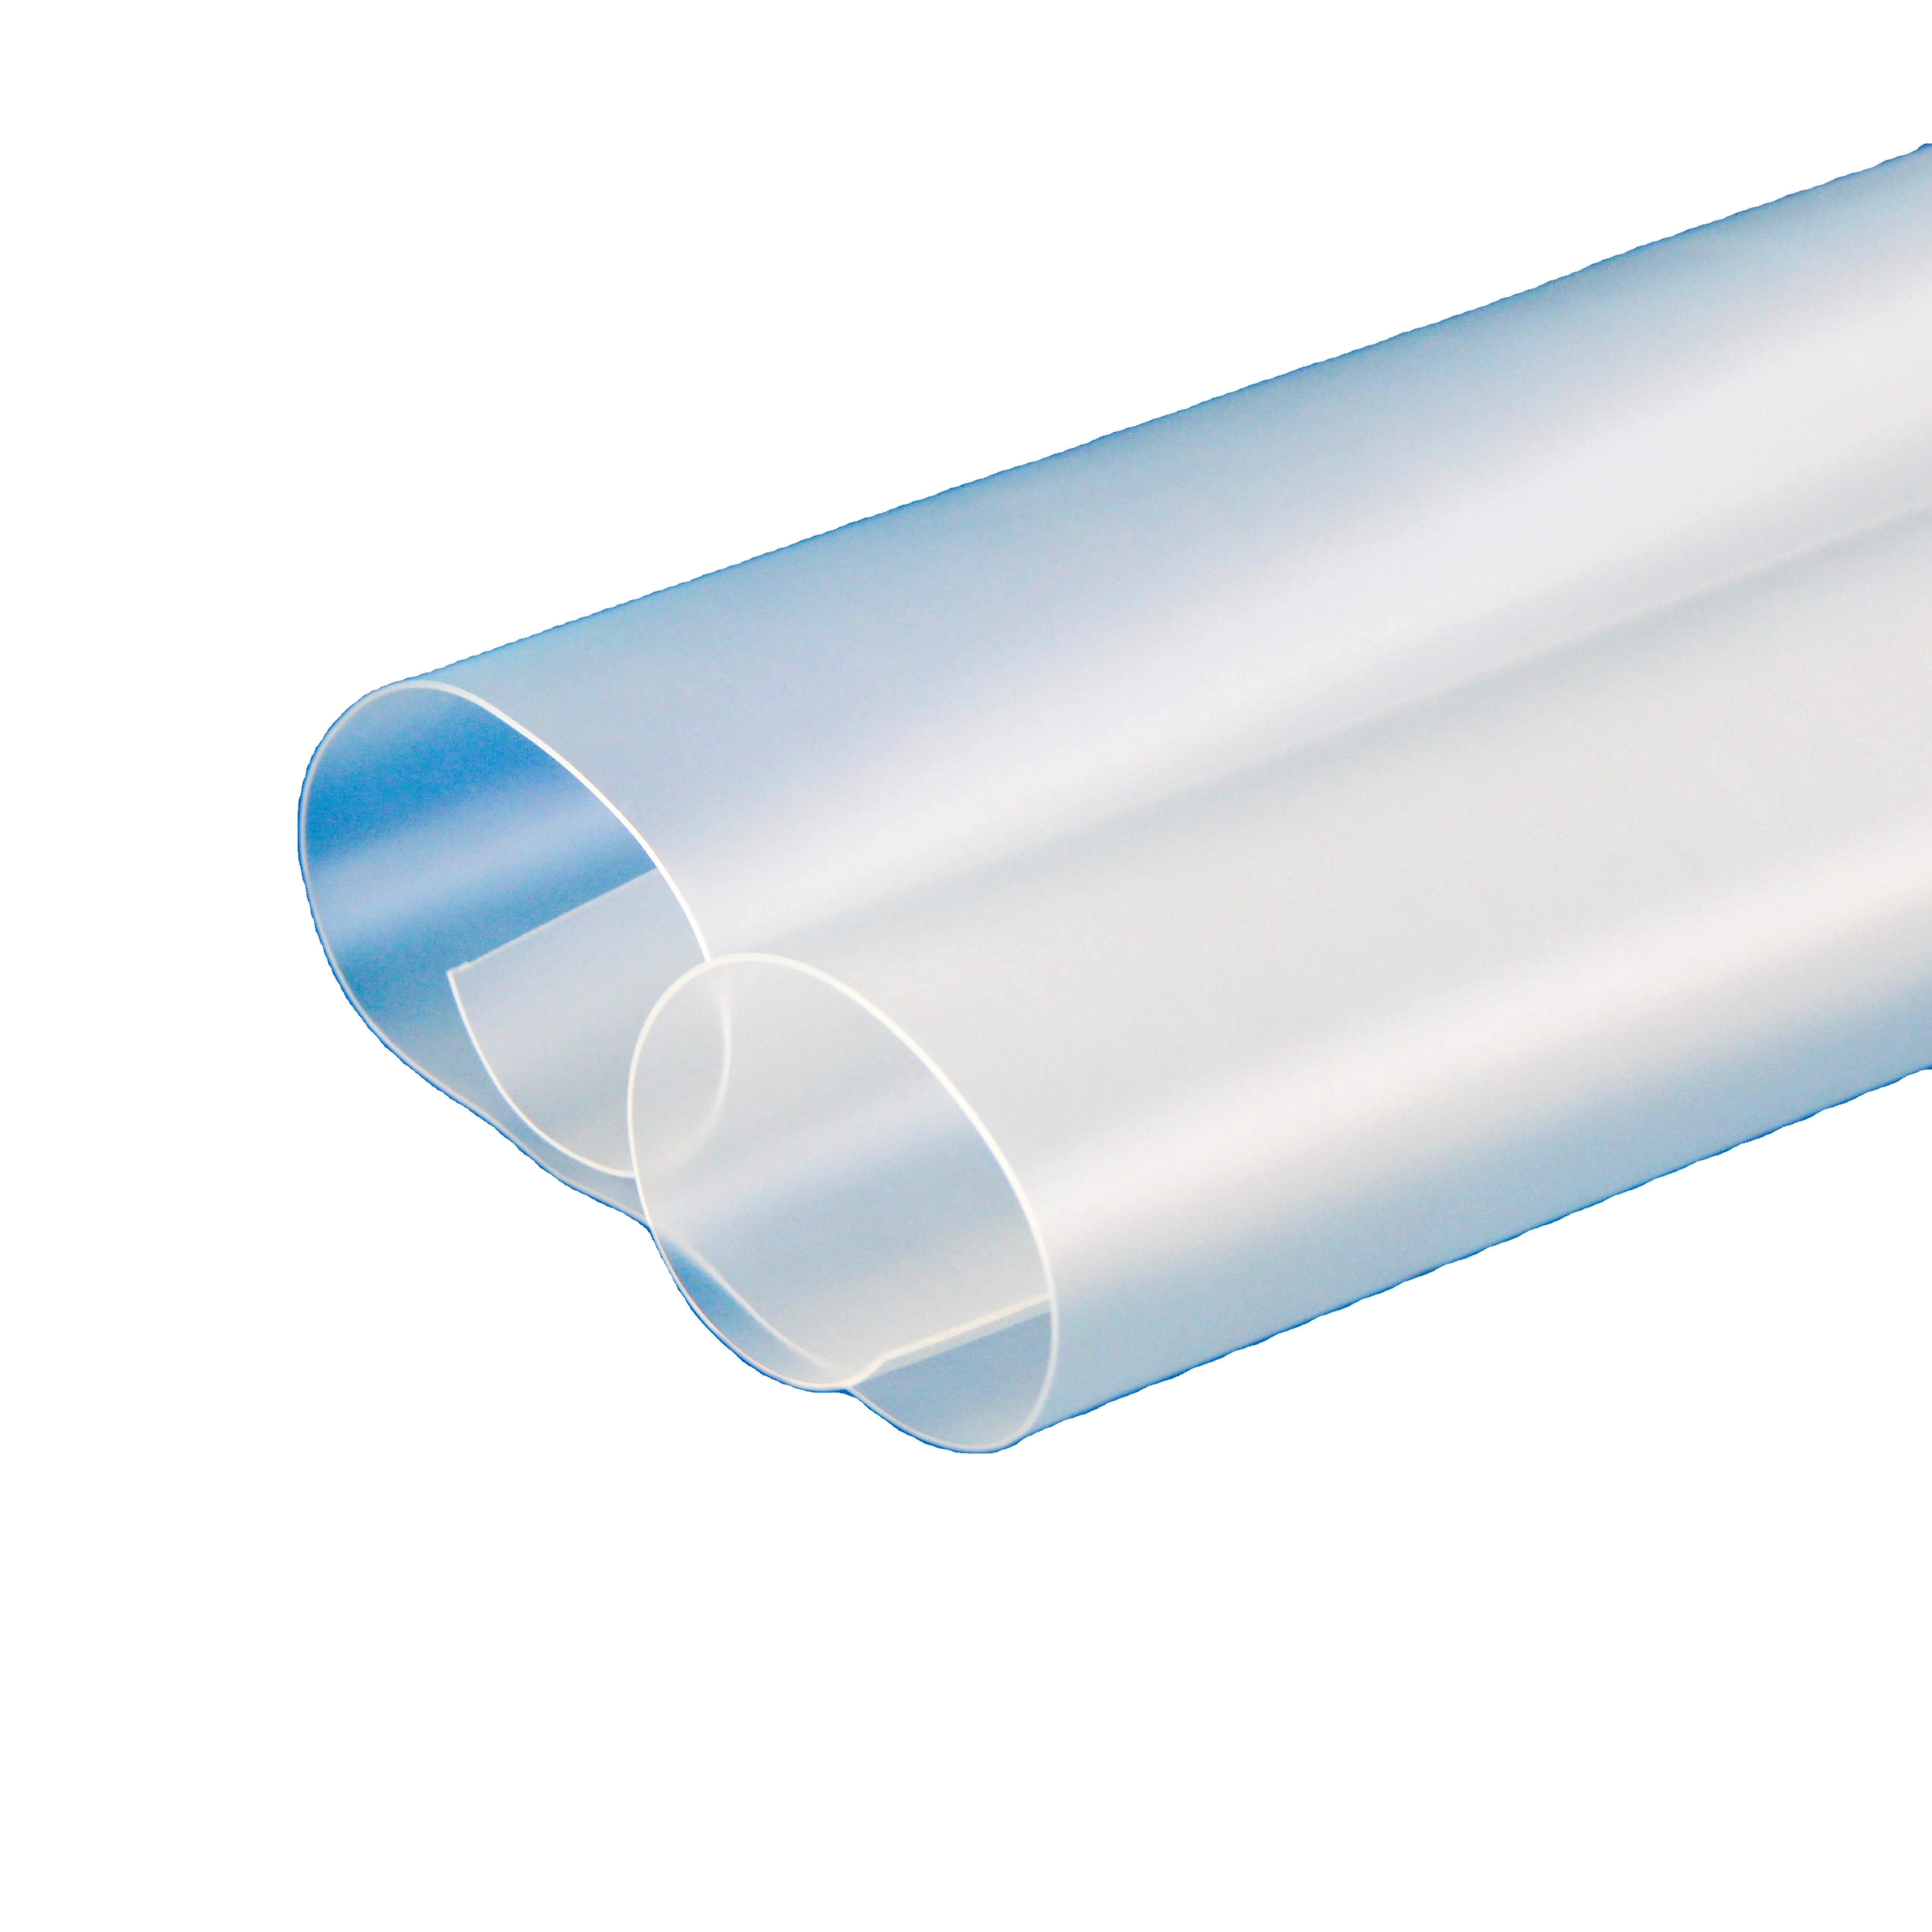 Pasokan pabrik Sandite untuk kaca depan antipeluru kaca lapisan TPU poliuretan termoplastik elastomer berbasis uretana